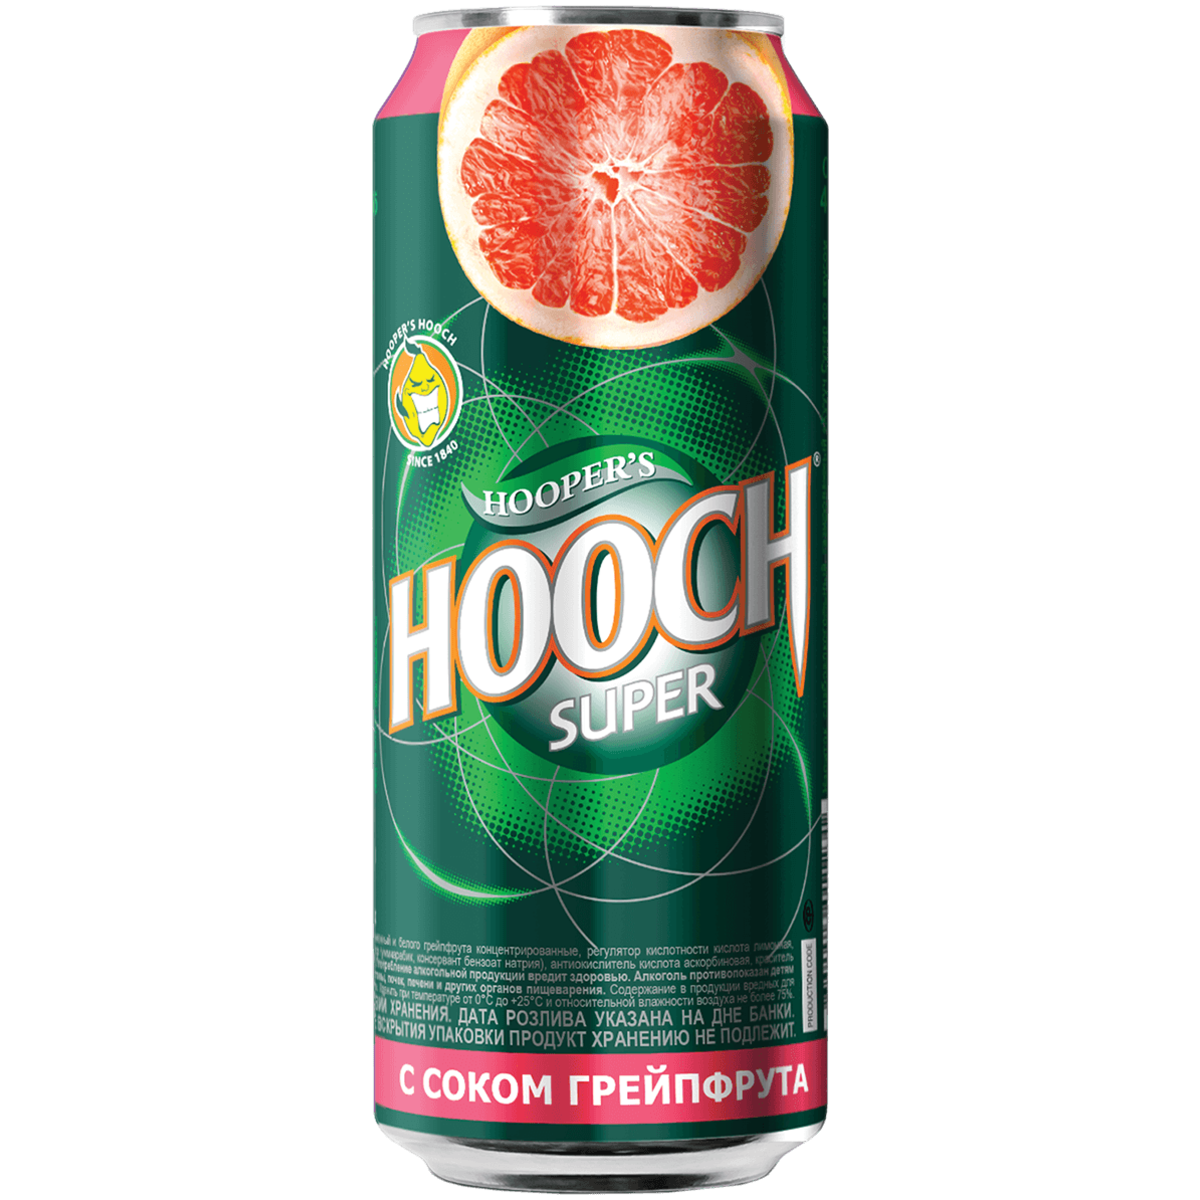 Пиво хуч. Hooch super напиток грейпфрут ГАЗ 7.2 0.45 Ж/Б. Hooch super напиток ГАЗ грейпфрут 7.2 0.45 мегапак. Хуч 7.2. Слабоалк.напиток "Хуууч супер" грейпфрут 0,45л ж/б 7,2%.